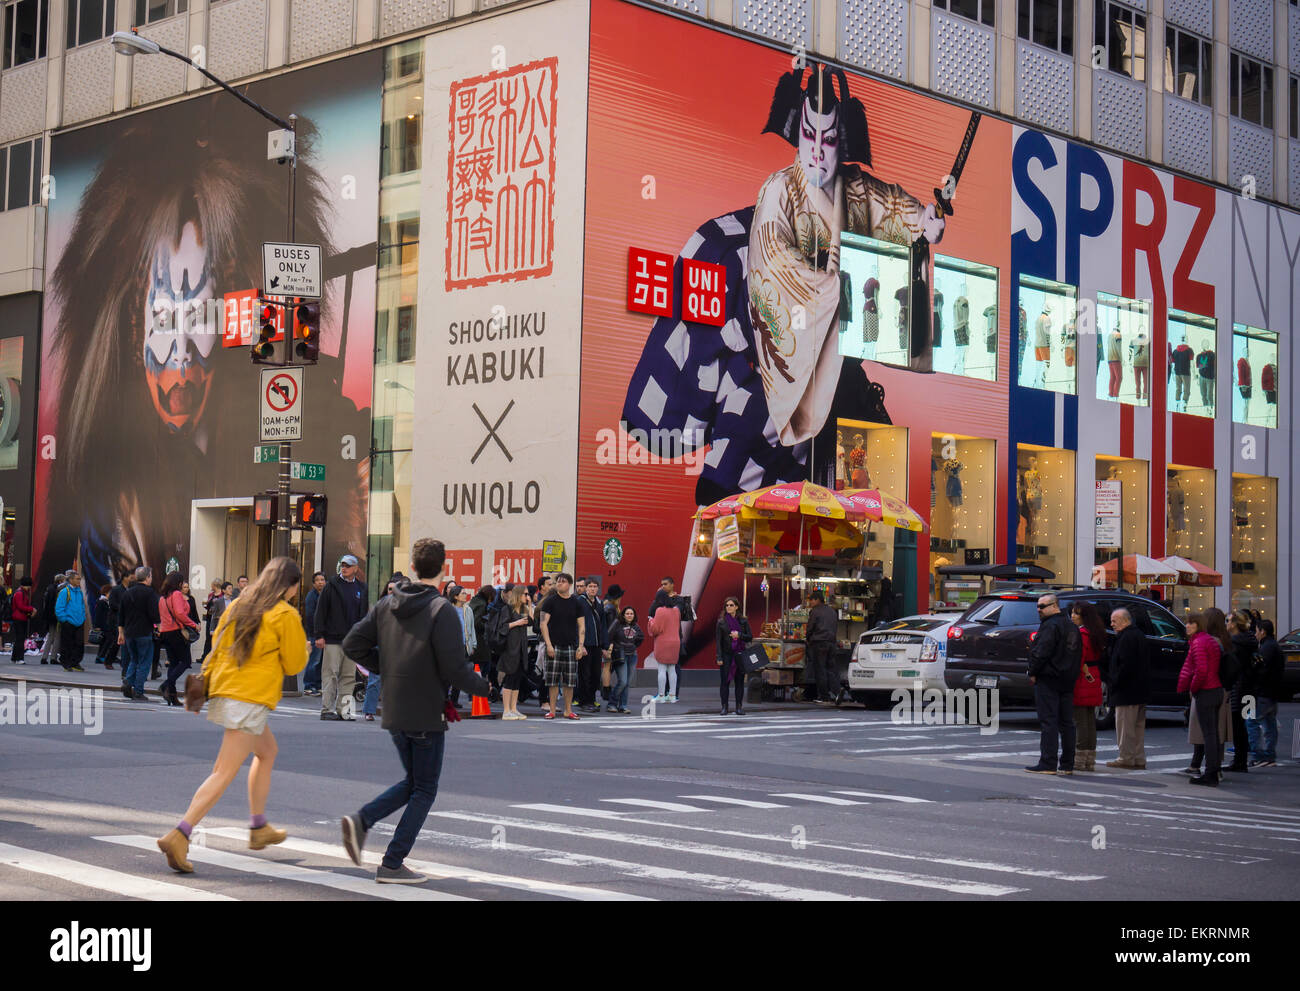 La boutique Uniqlo sur la Cinquième Avenue à New York est décoré pour leur  projet Kabuki Shochiku et Uniqlo, vu le Samedi, Avril 11, 2015. Une ligne  de vêtements basée sur l'art